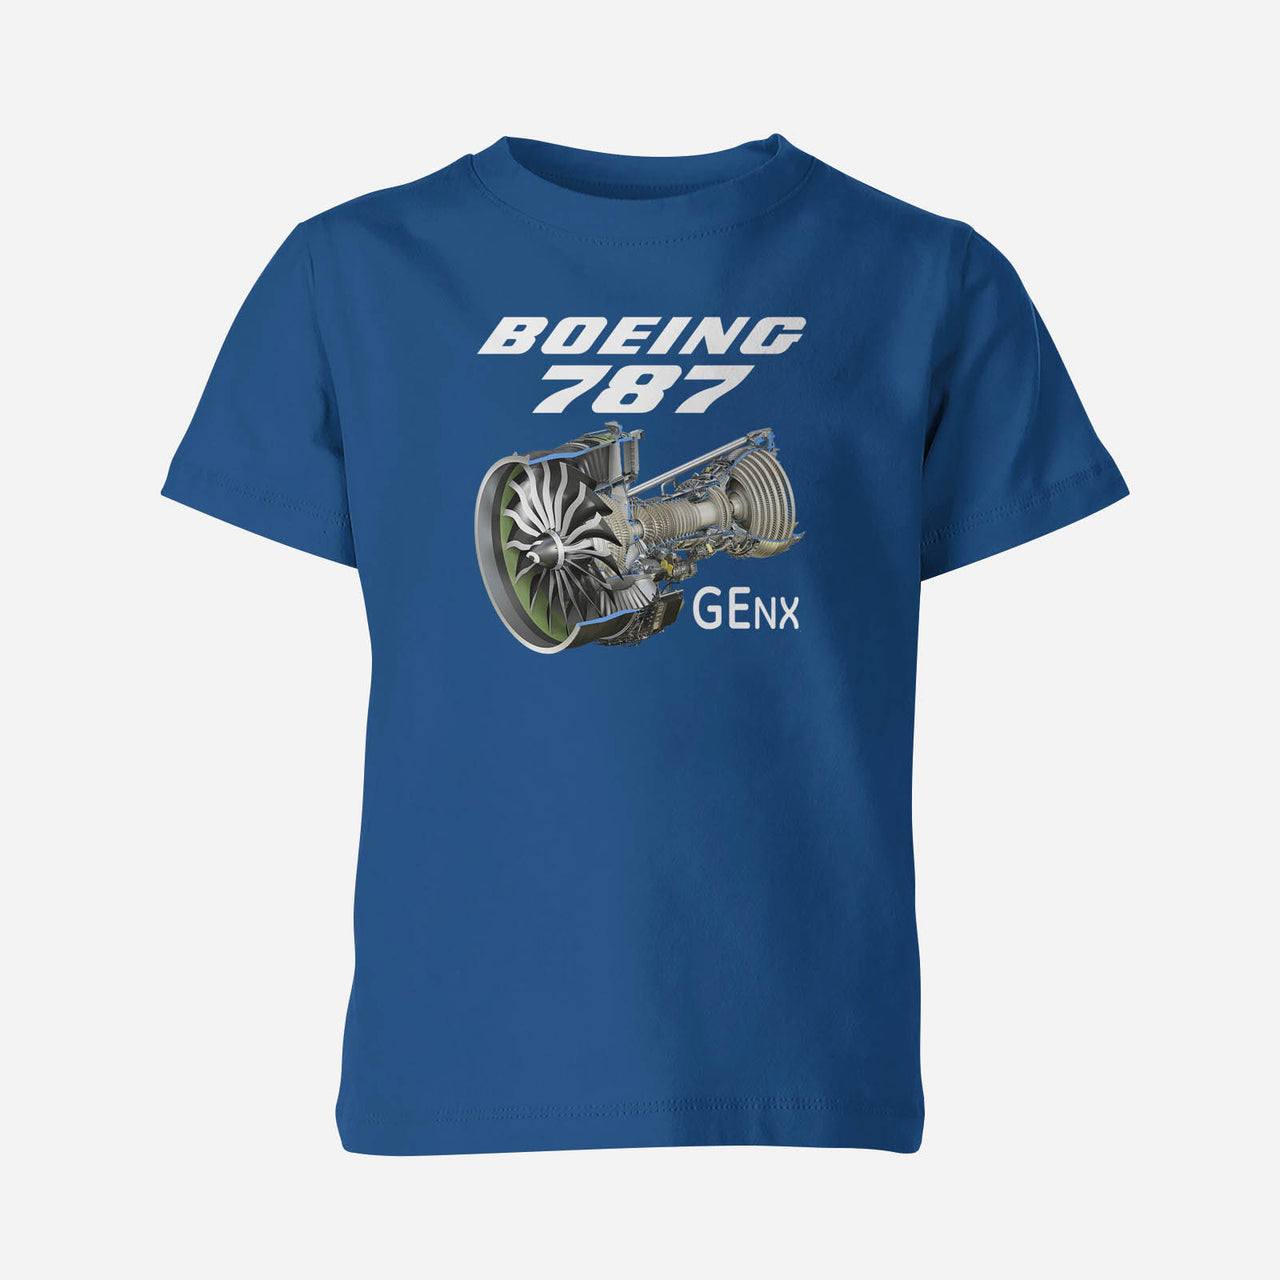 Boeing 787 & GENX Engine Designed Children T-Shirts